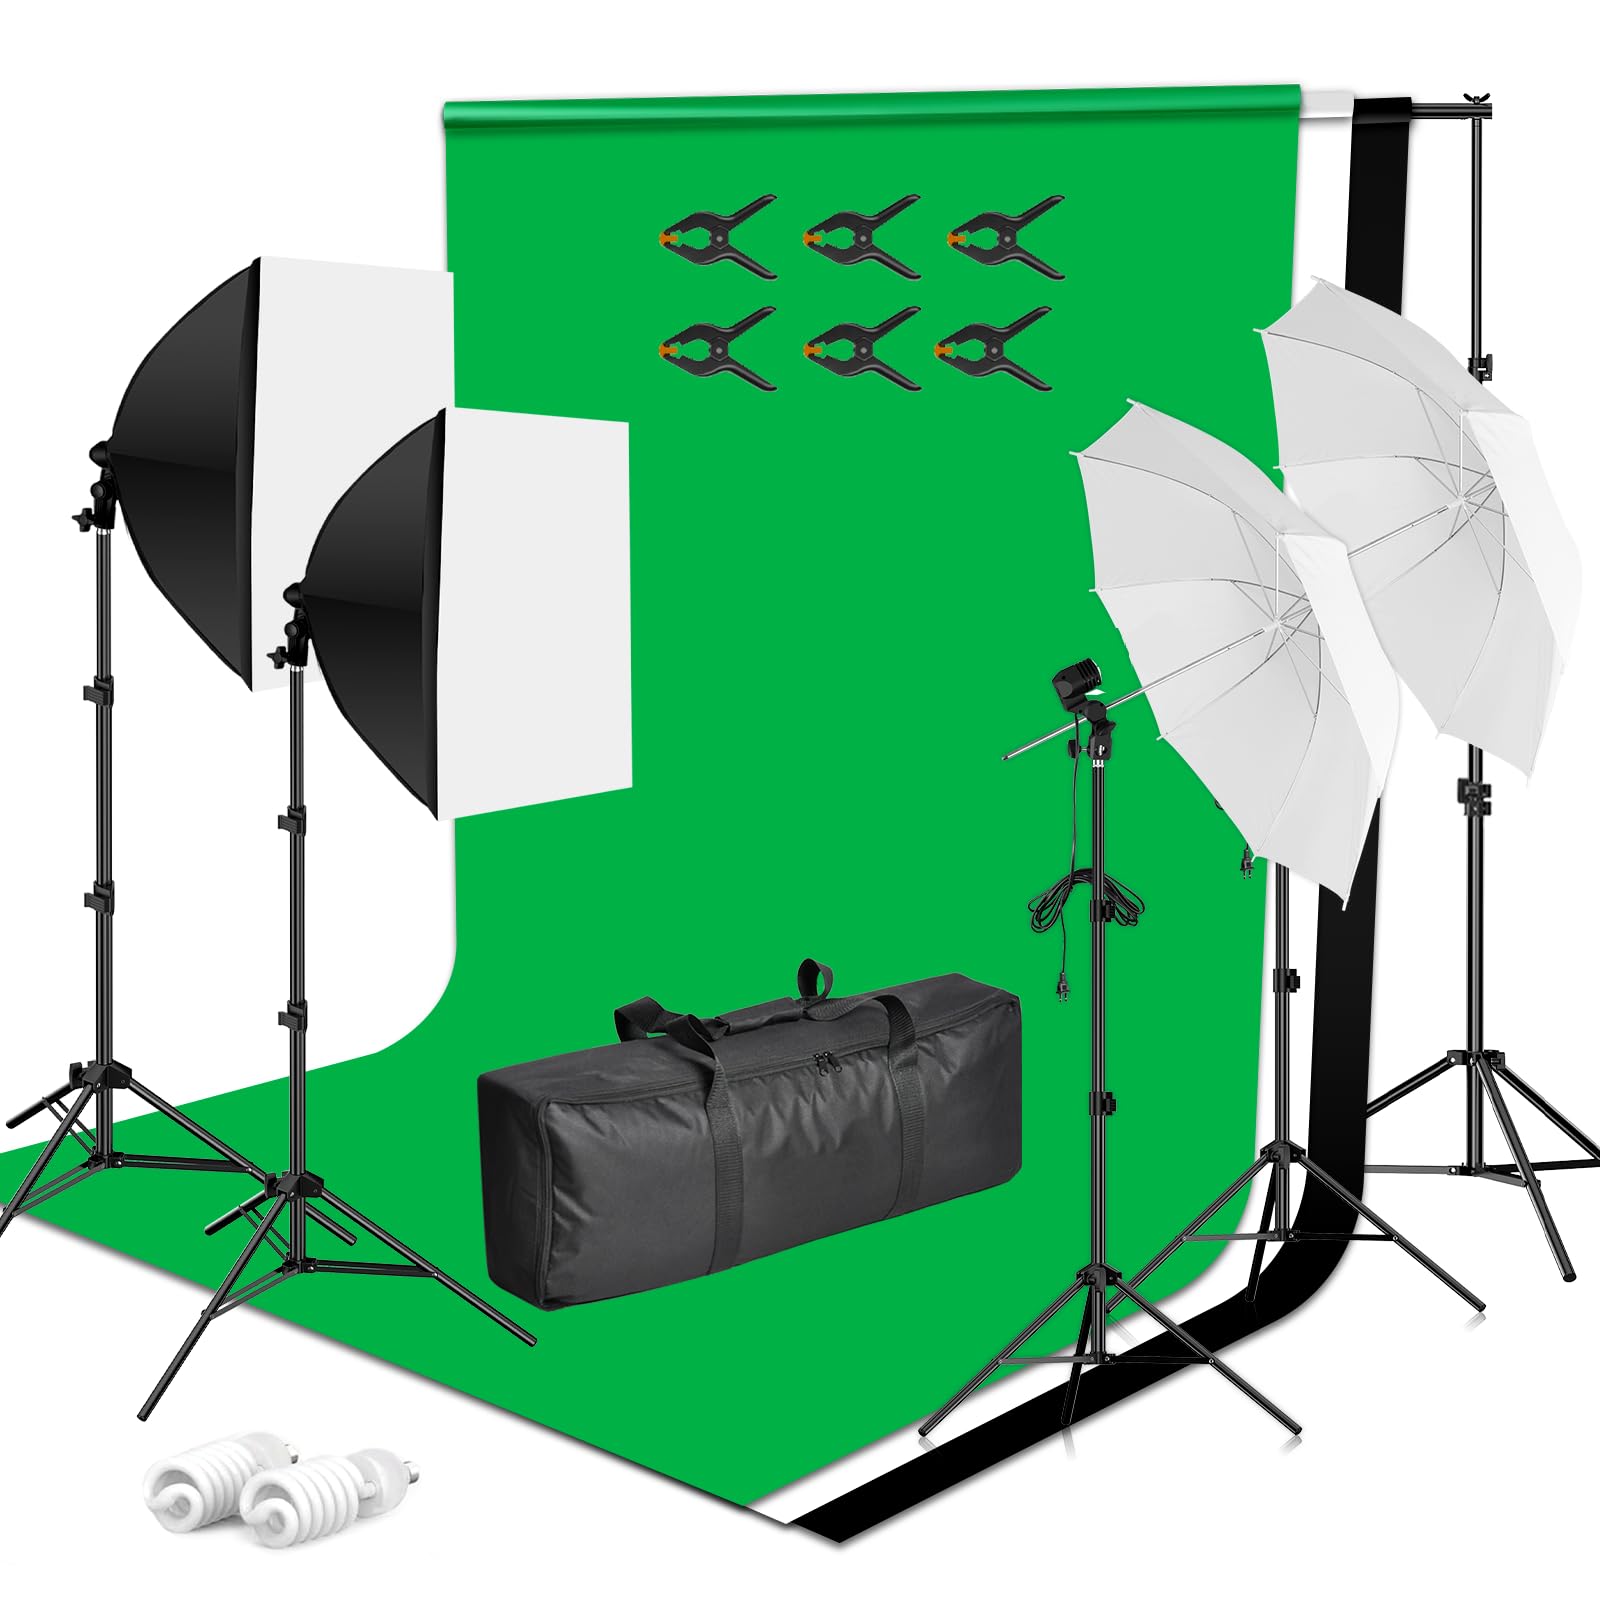 EMART Hintergrund-Unterstützungssystem, 3 Farb-Hintergründe, Softbox-Beleuchtungsset für Fotografie, Fotostudio, Videoaufnahmen, Produktporträt